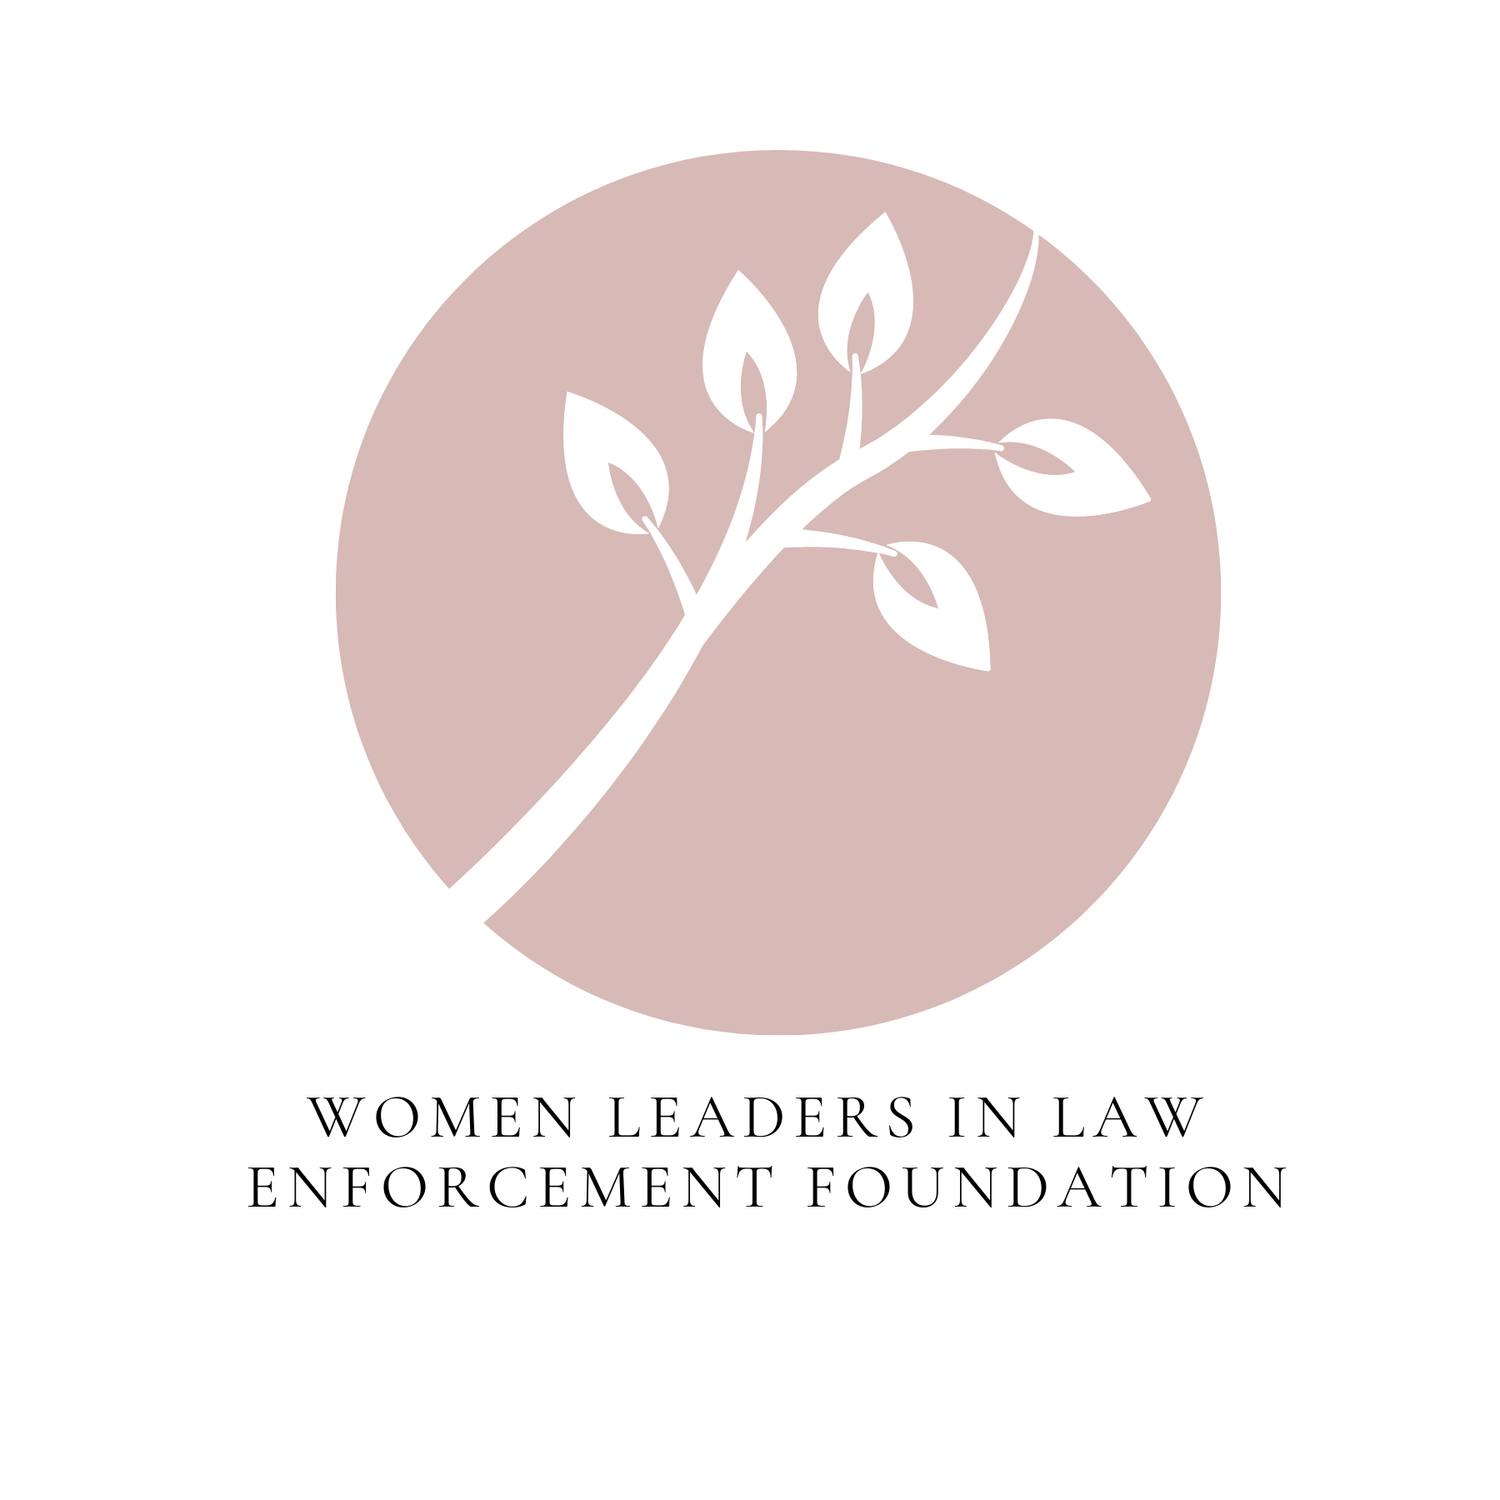 Women leaders in law enforcement foundation